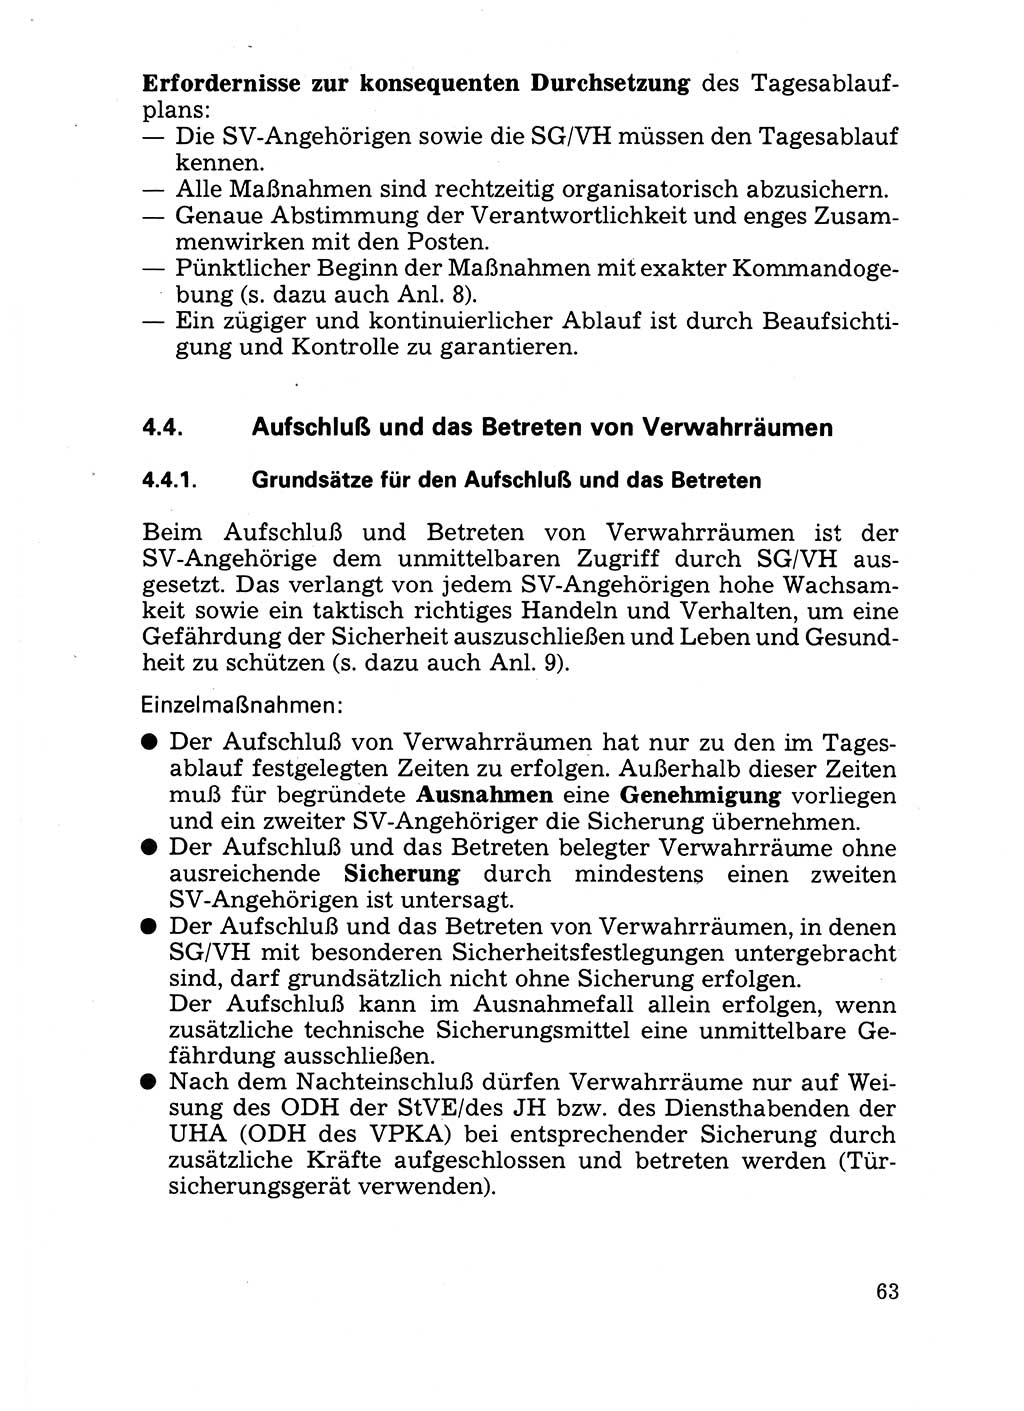 Handbuch für operative Dienste, Abteilung Strafvollzug (SV) [Ministerium des Innern (MdI) Deutsche Demokratische Republik (DDR)] 1981, Seite 63 (Hb. op. D. Abt. SV MdI DDR 1981, S. 63)